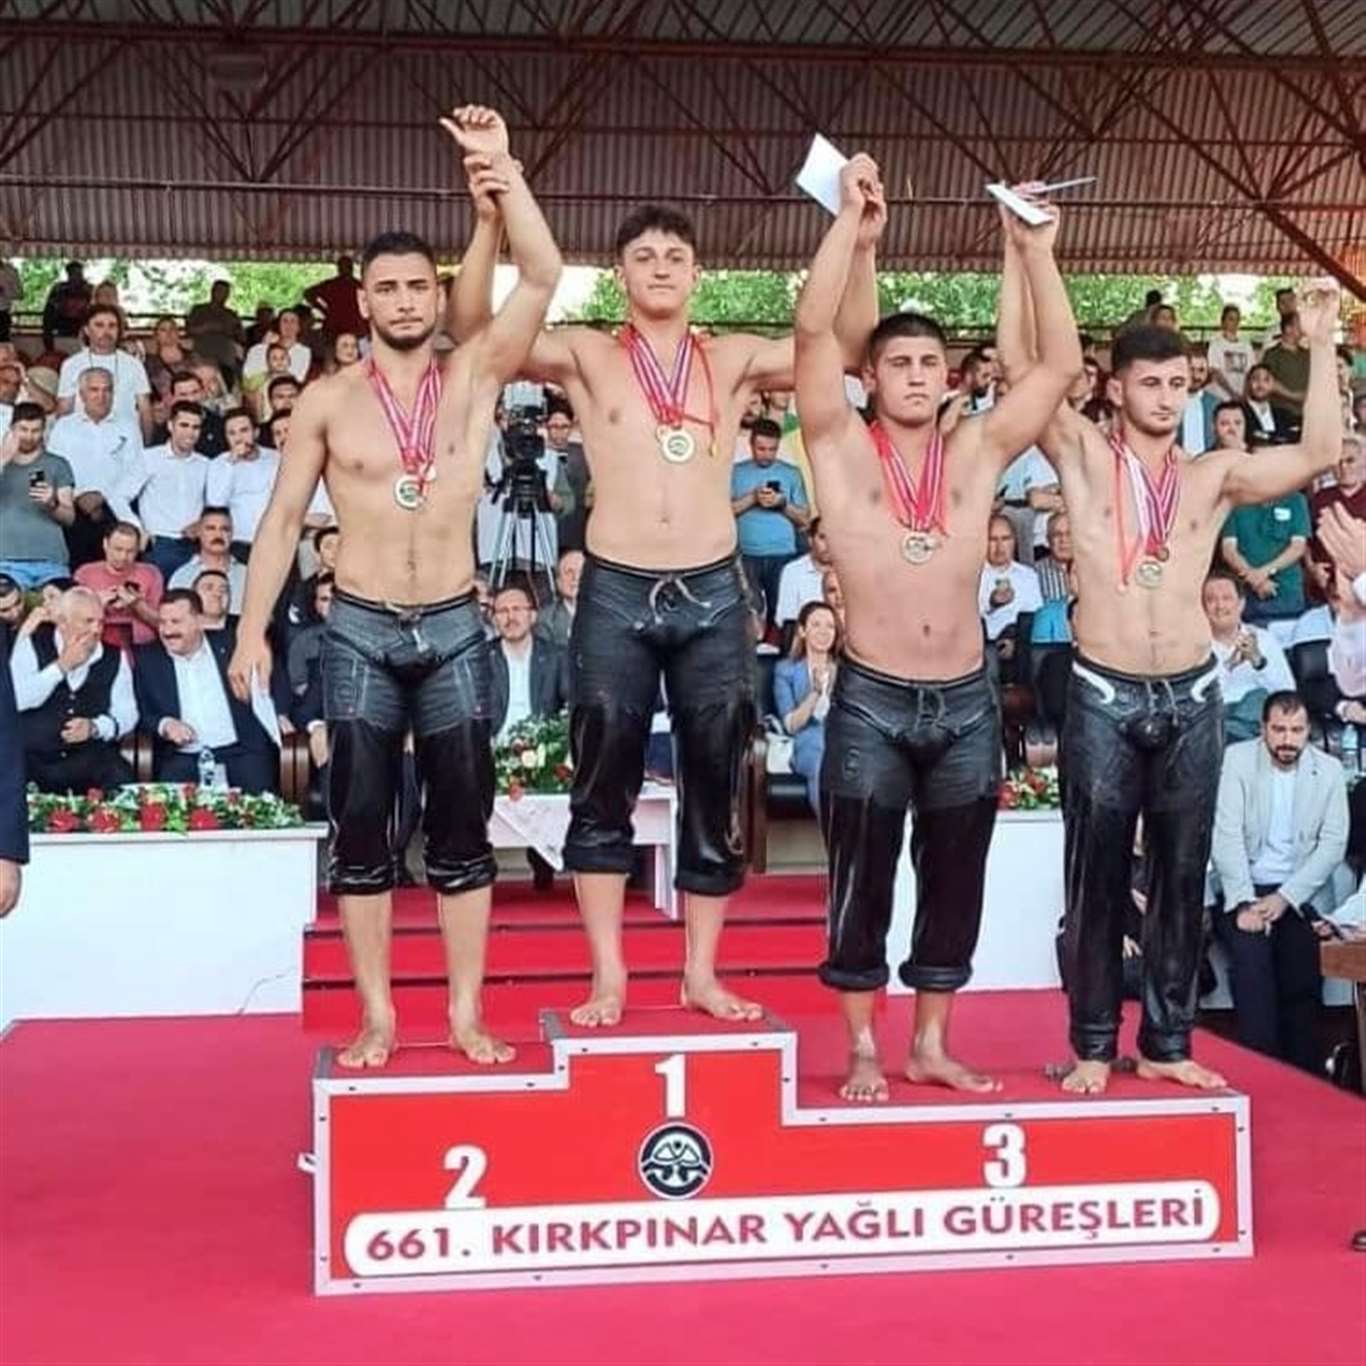 Muğlalı sporcular Kırkpınar'dan madalya ile döndü haberi